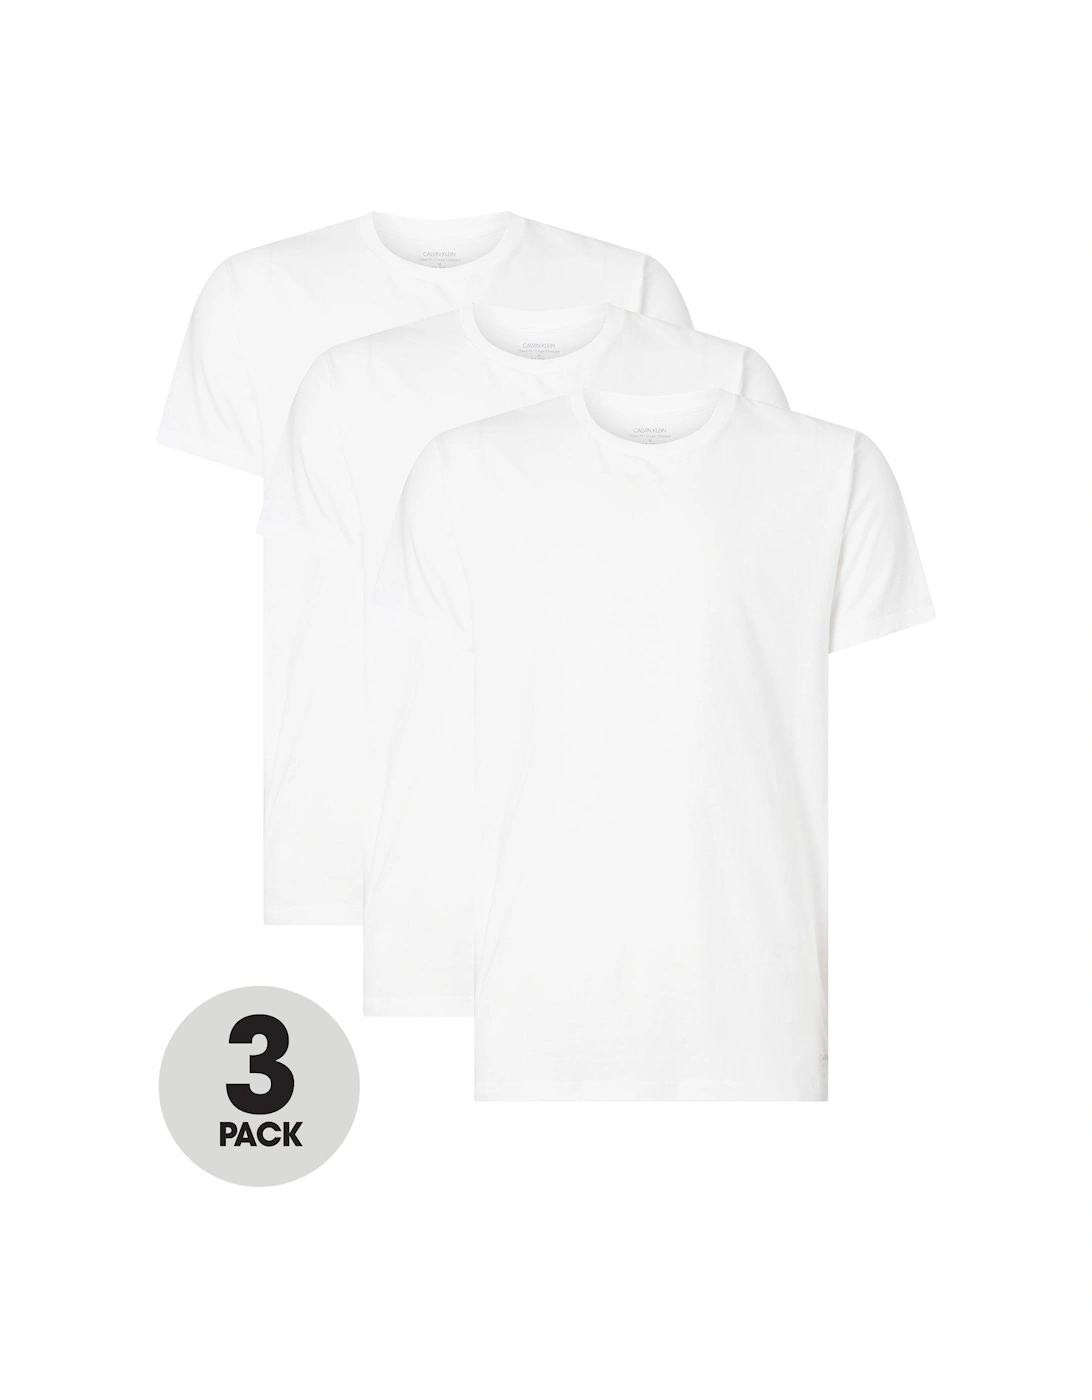 Loungewear 3 Pack T-Shirt - Black/White/Grey, 3 of 2